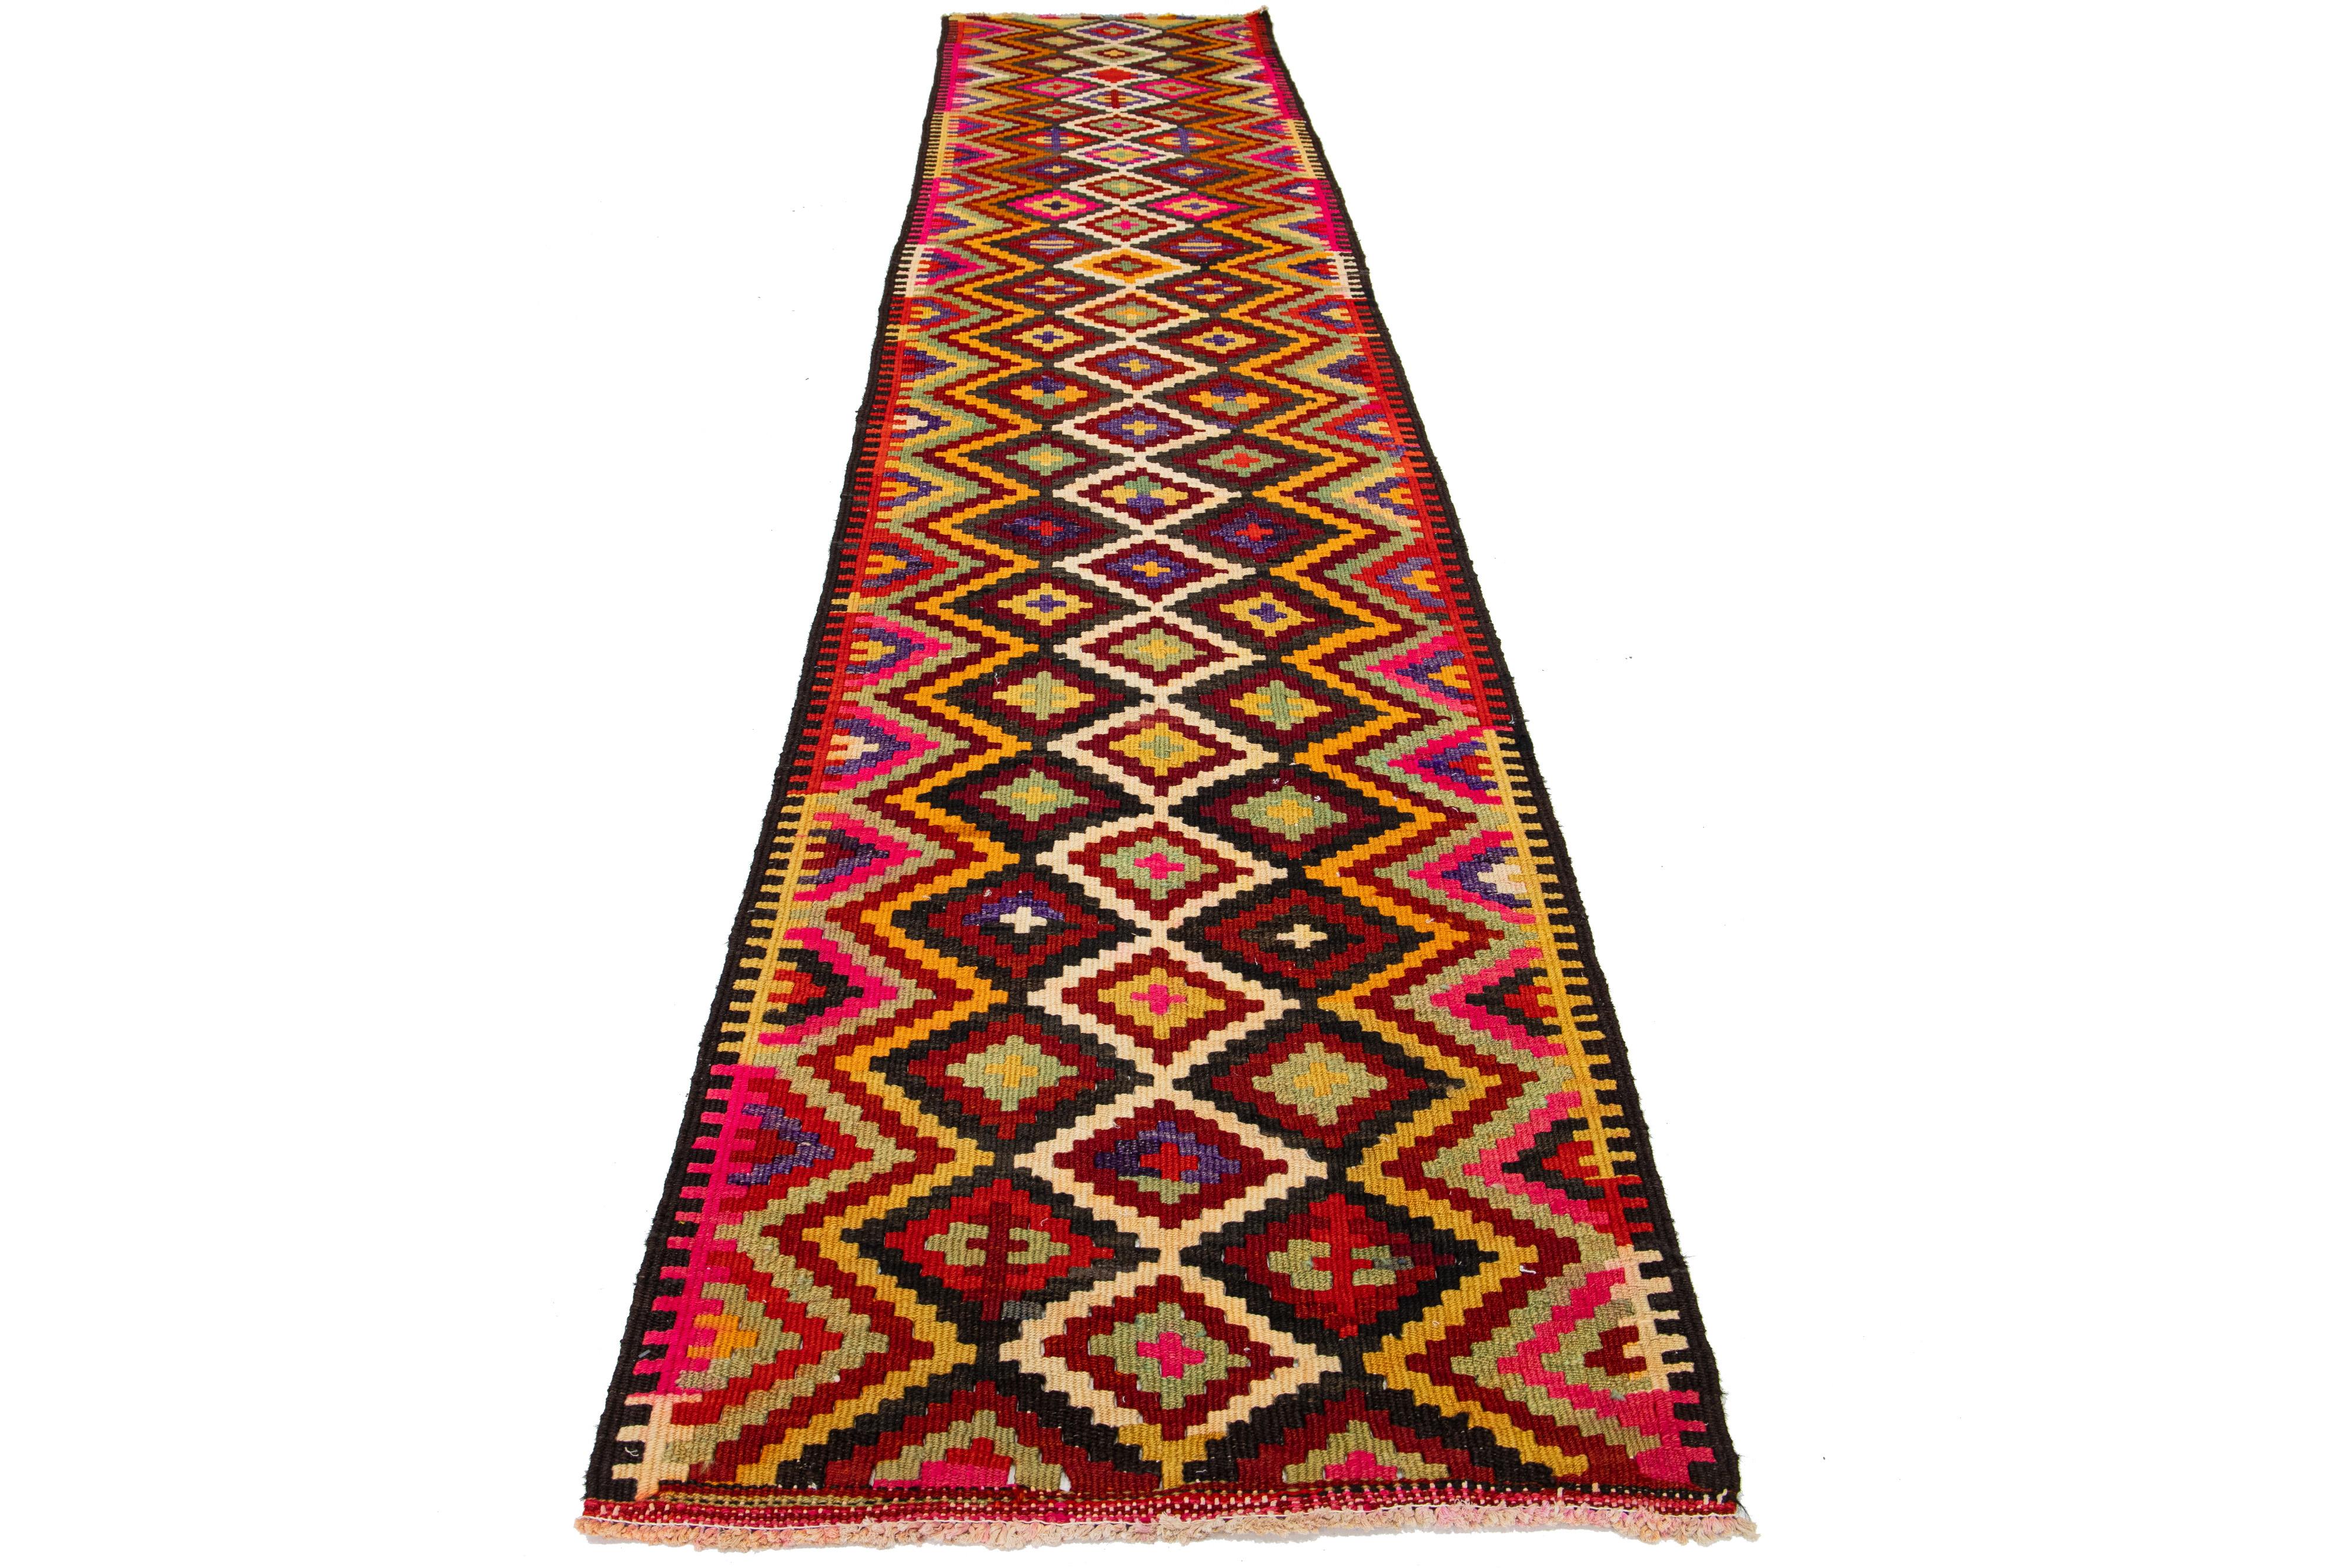 Il s'agit d'un tapis kilim en laine tissé à plat, fait à la main, avec un champ multicolore. Le tapis arbore un design géométrique sur tout le pourtour qui ajoute à son attrait esthétique.

Ce tapis mesure 2'11